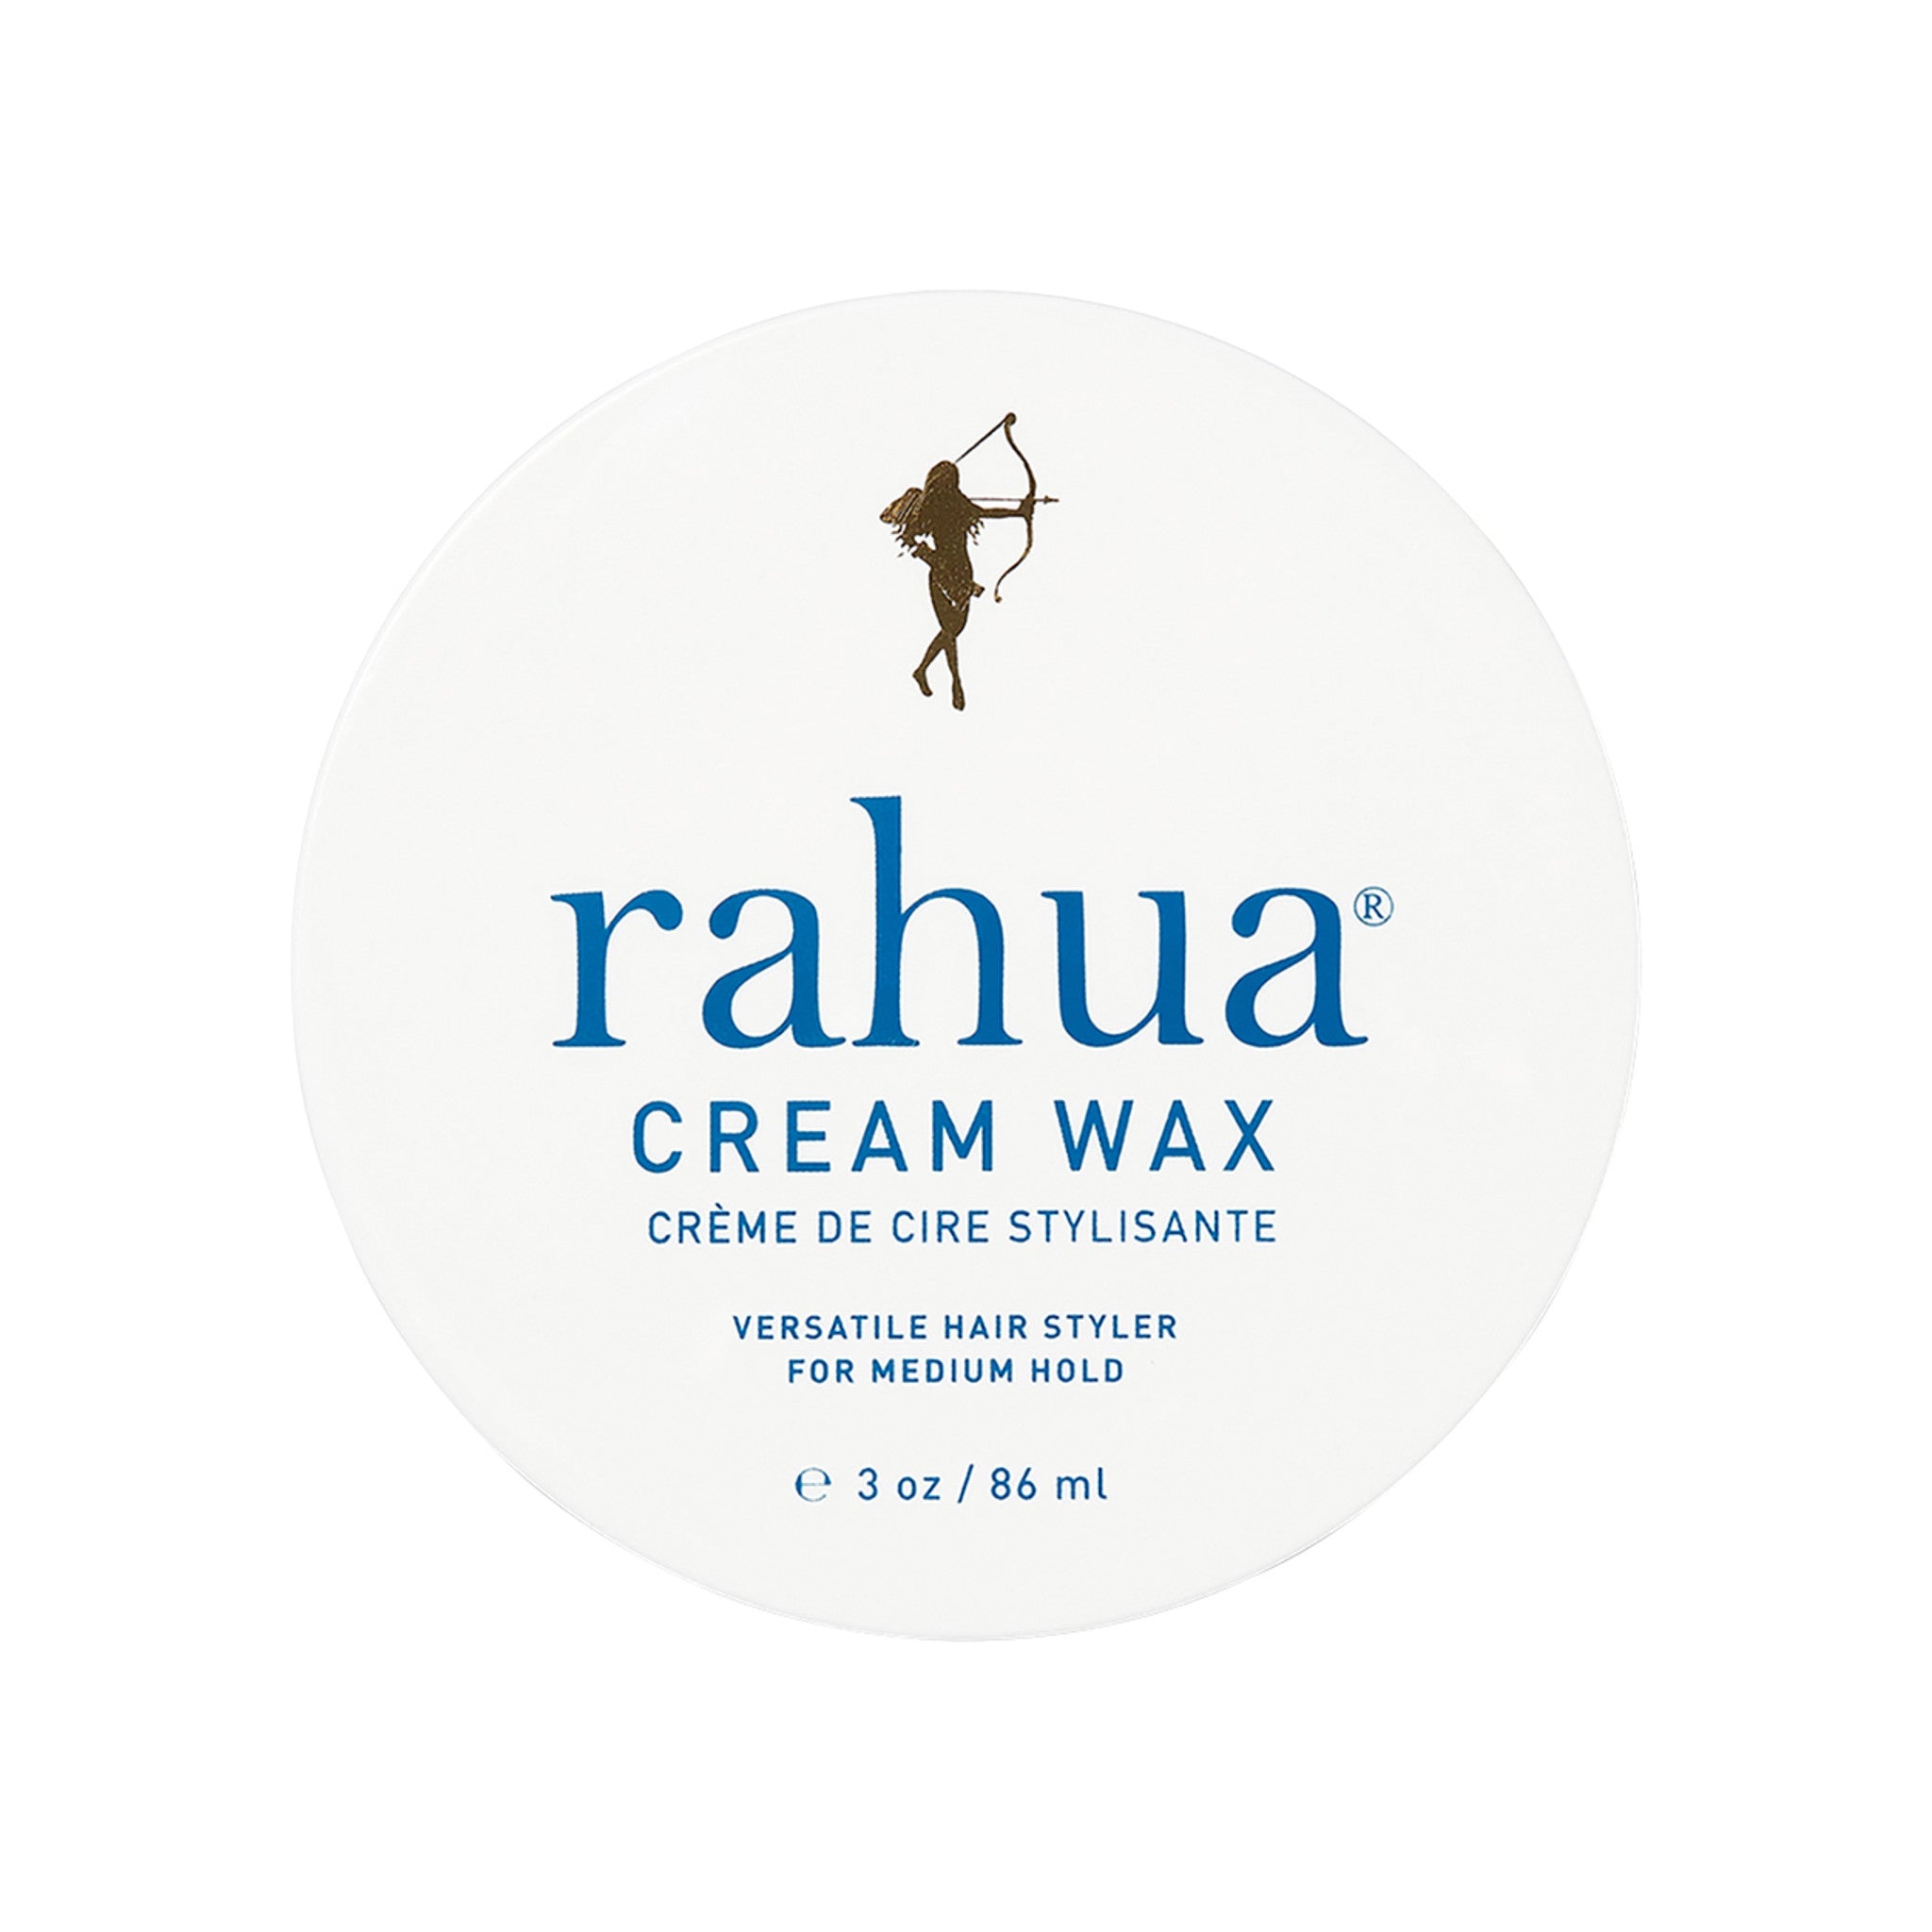 Rahua Cream Wax main image.